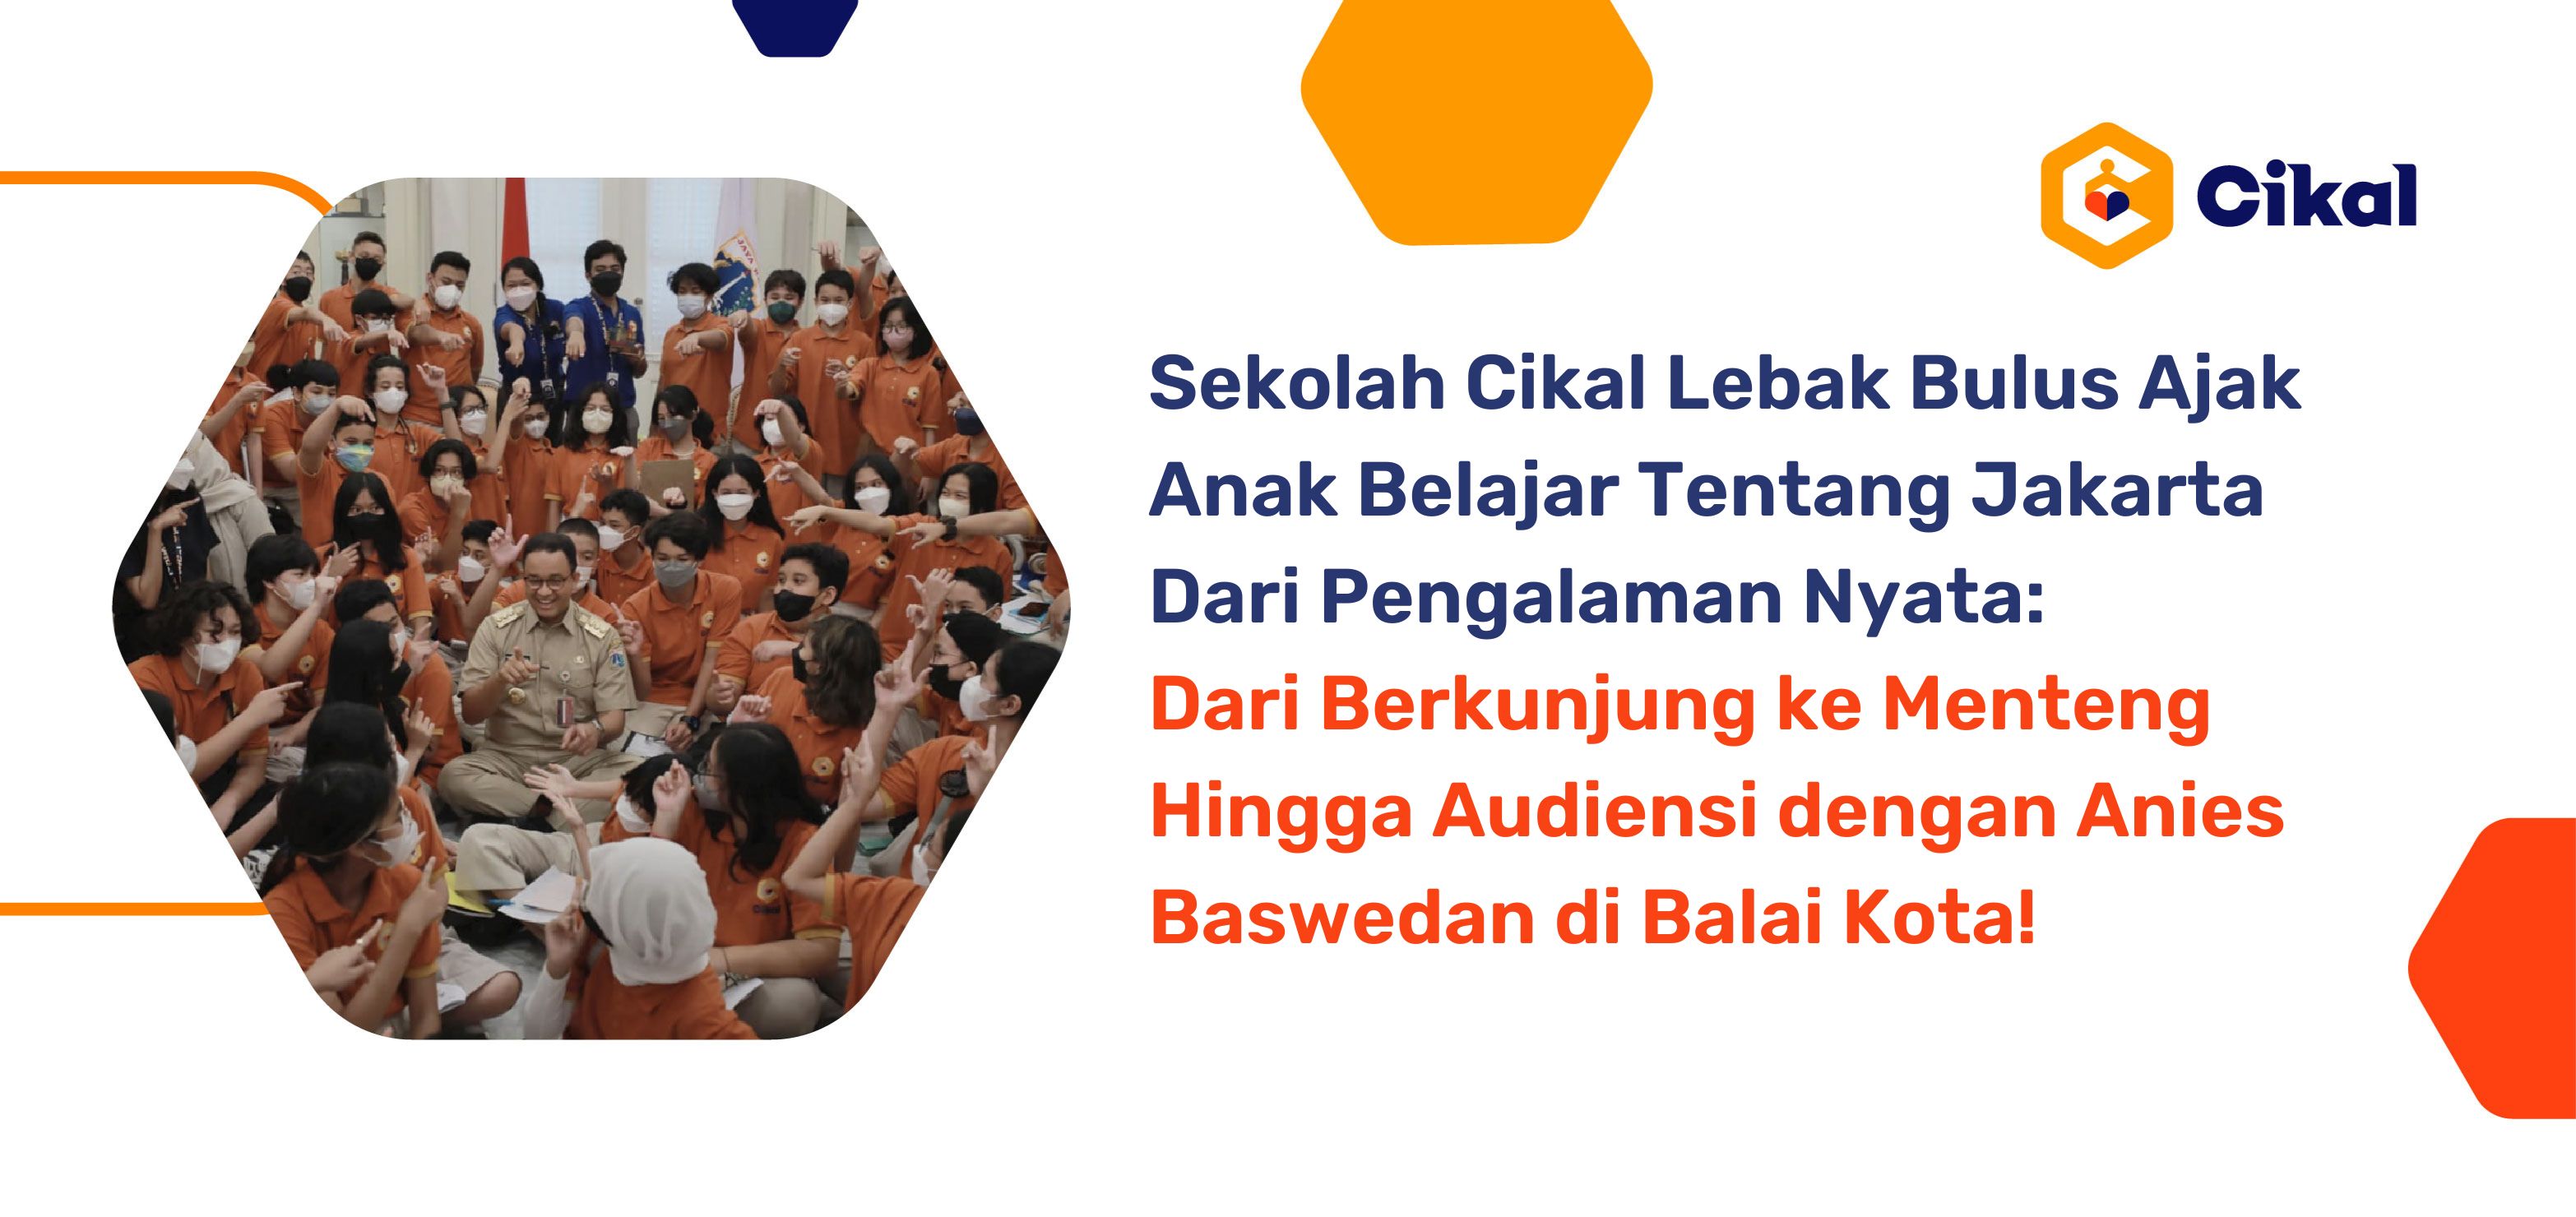 Sekolah Cikal Lebak Bulus Ajak Anak Belajar Tentang Jakarta Dari Pengalaman Nyata: Dari Berkunjung ke Menteng Hingga Audiensi dengan Anies Baswedan di Balai Kota! 